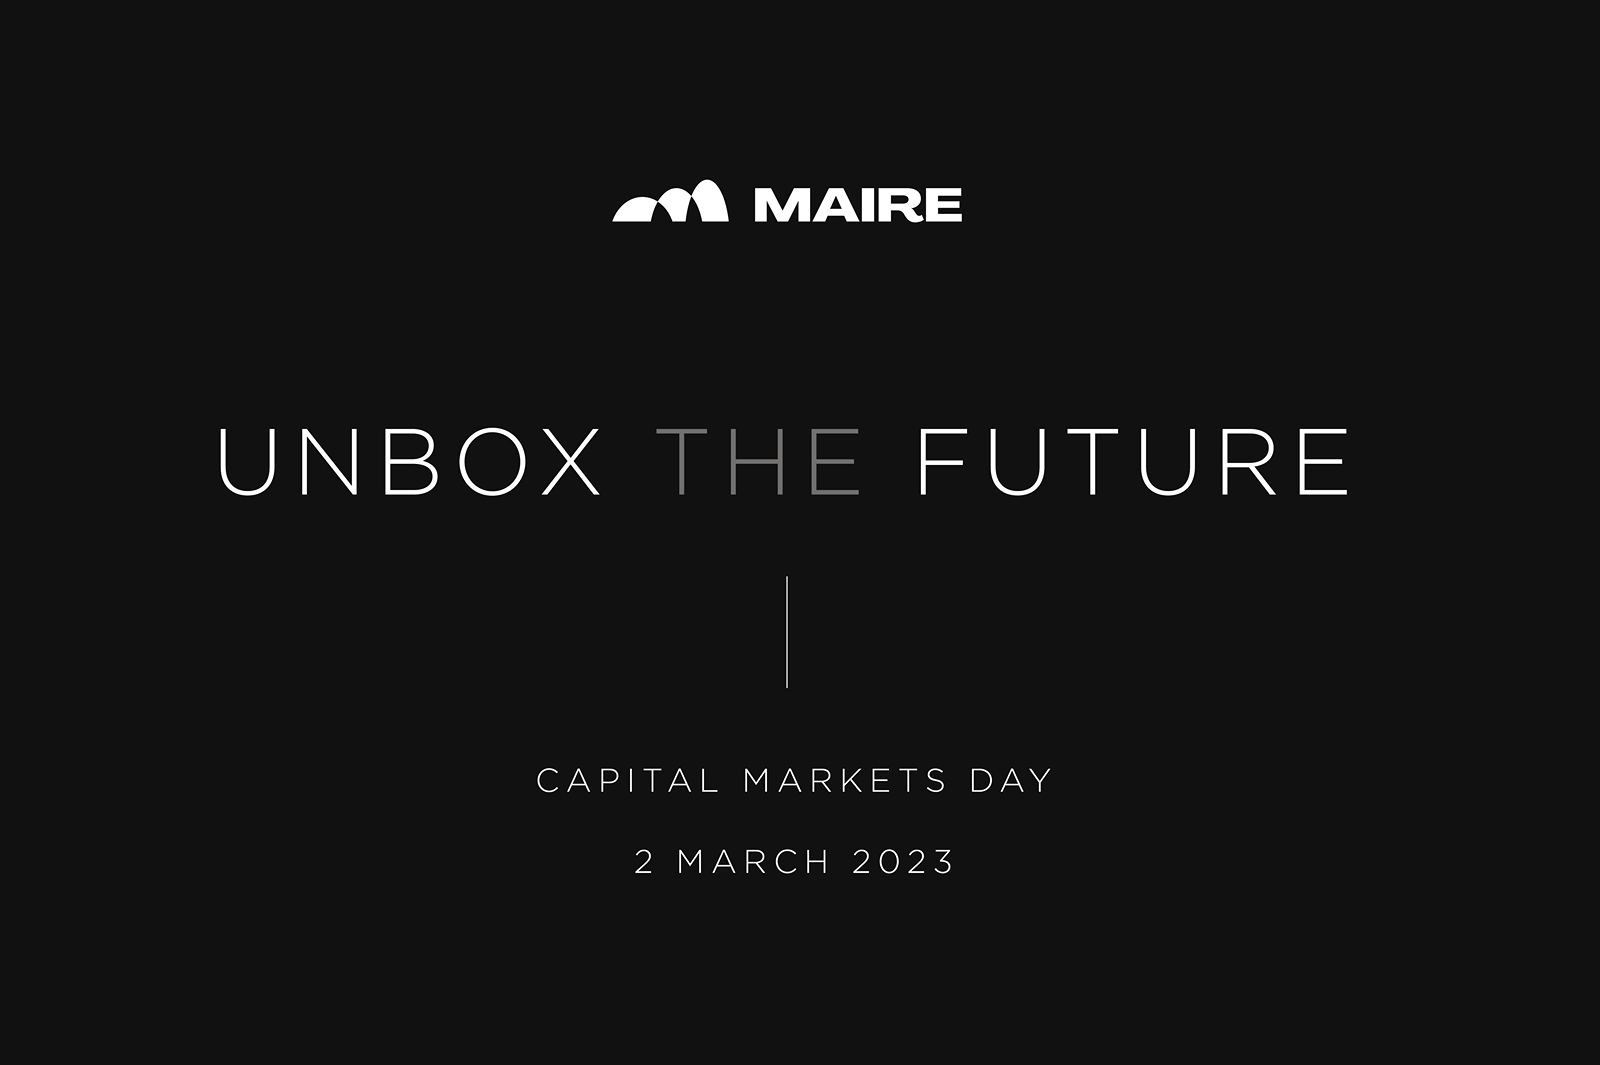 Maire Tecnimont annuncia il Piano Strategico 2023-2032 "Unbox the Future"